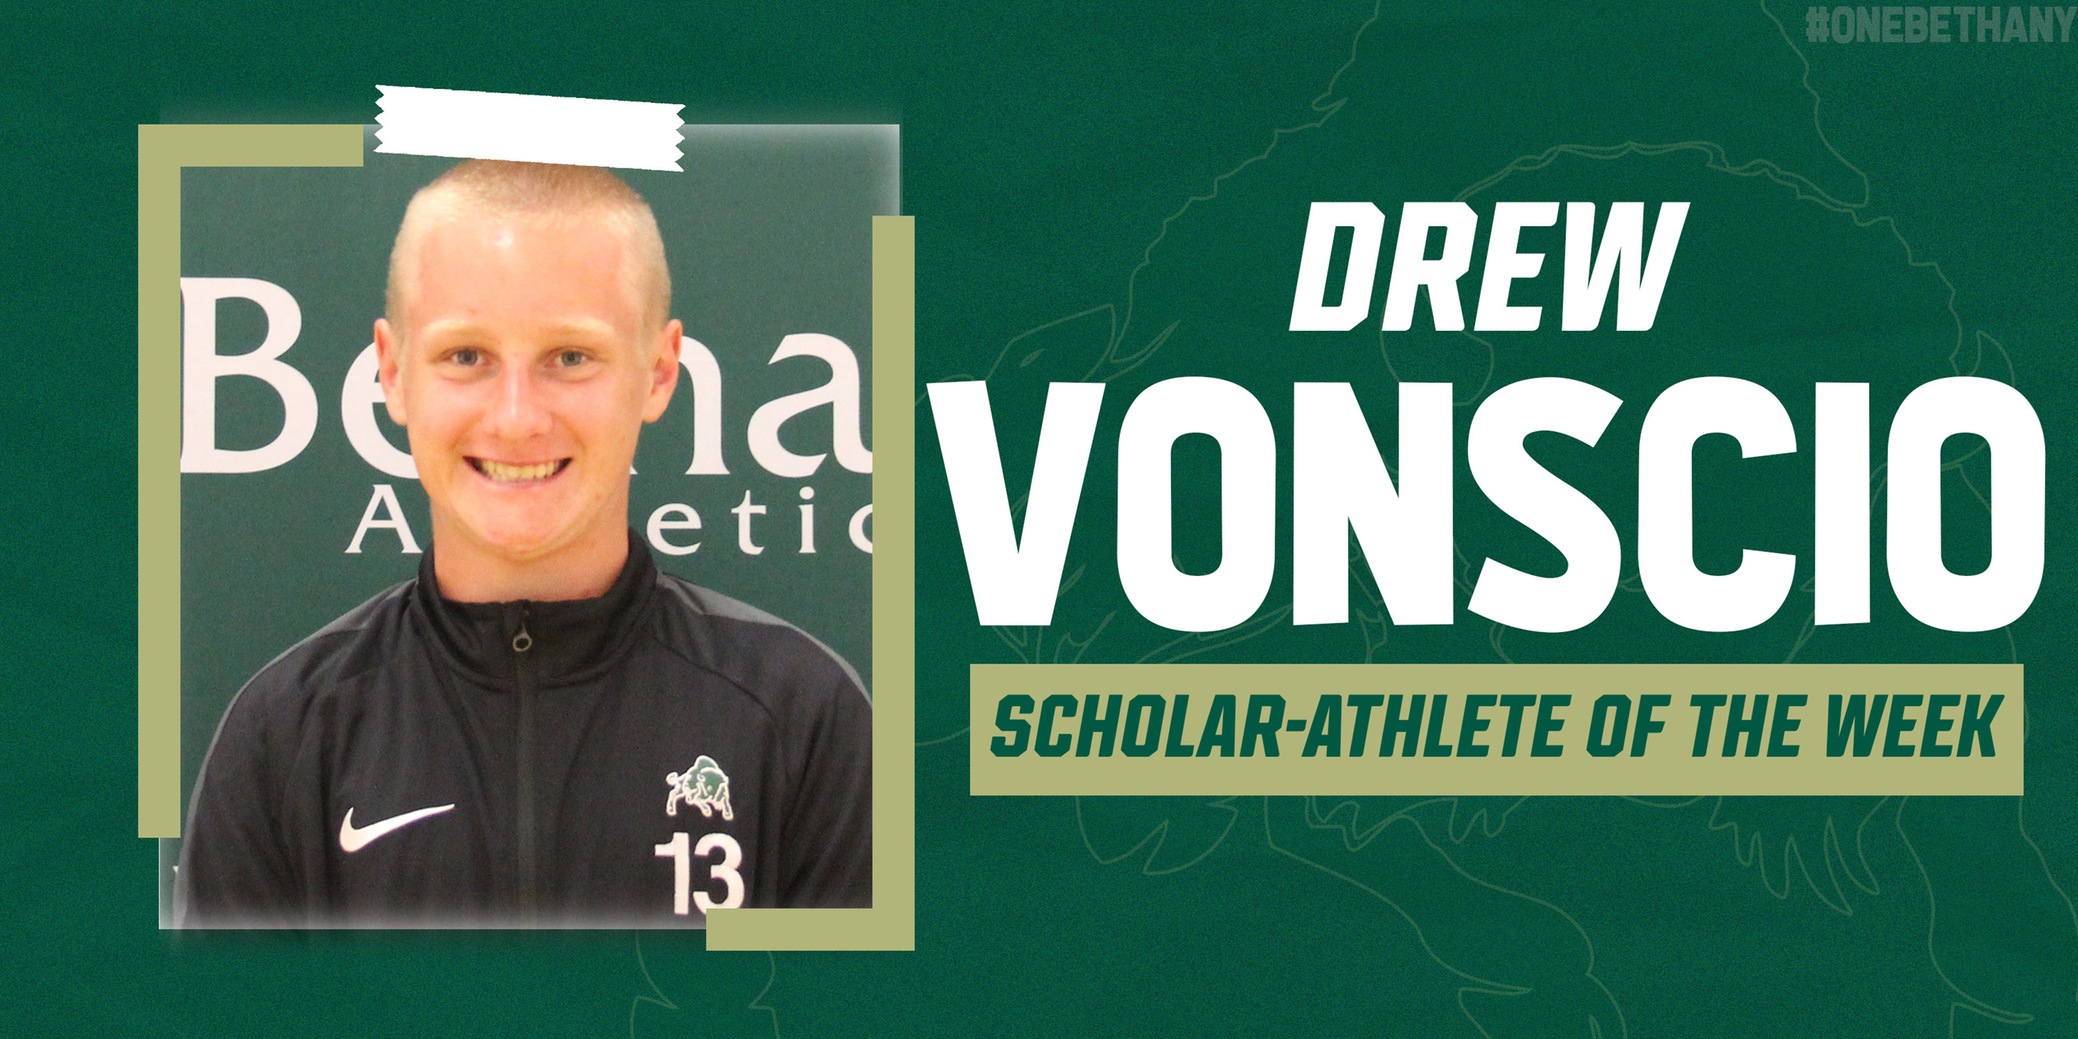 Bison Scholar-Athlete Spotlight: Drew VonScio